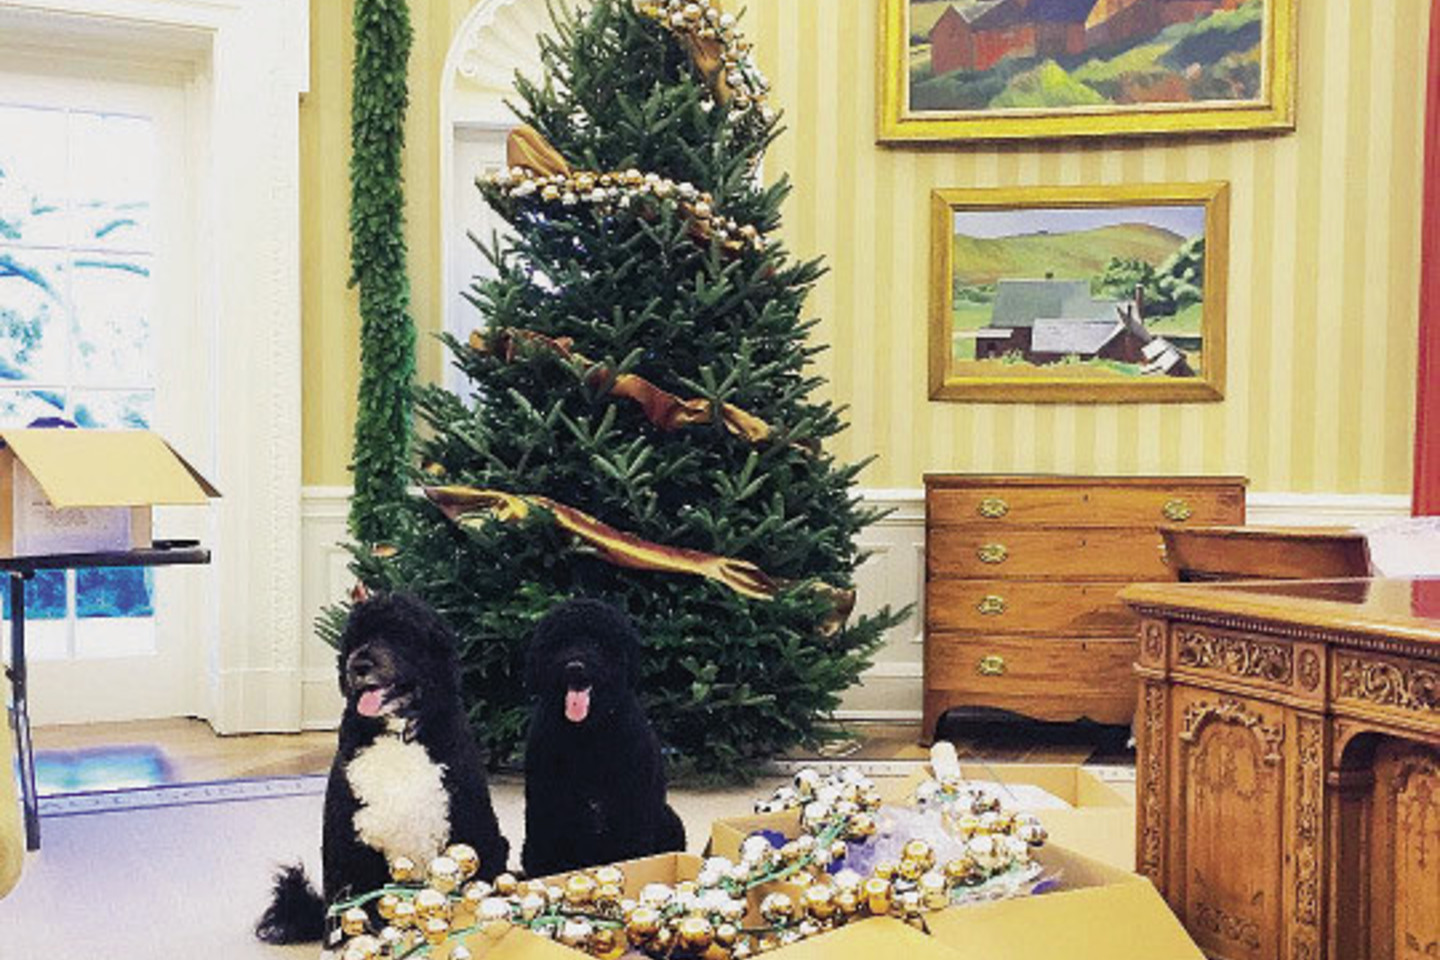 Kalėdiniu laikotarpiu Baltieji rūmai tiesiog žėri. Juos išpuošia specialiai samdyta menininkų komanda, tačiau vieną eglutę papuošia pirmoji JAV ponia Michelle Obama. Šiemet prezidentienė eglę puošė auksinėmis puošmenomis.